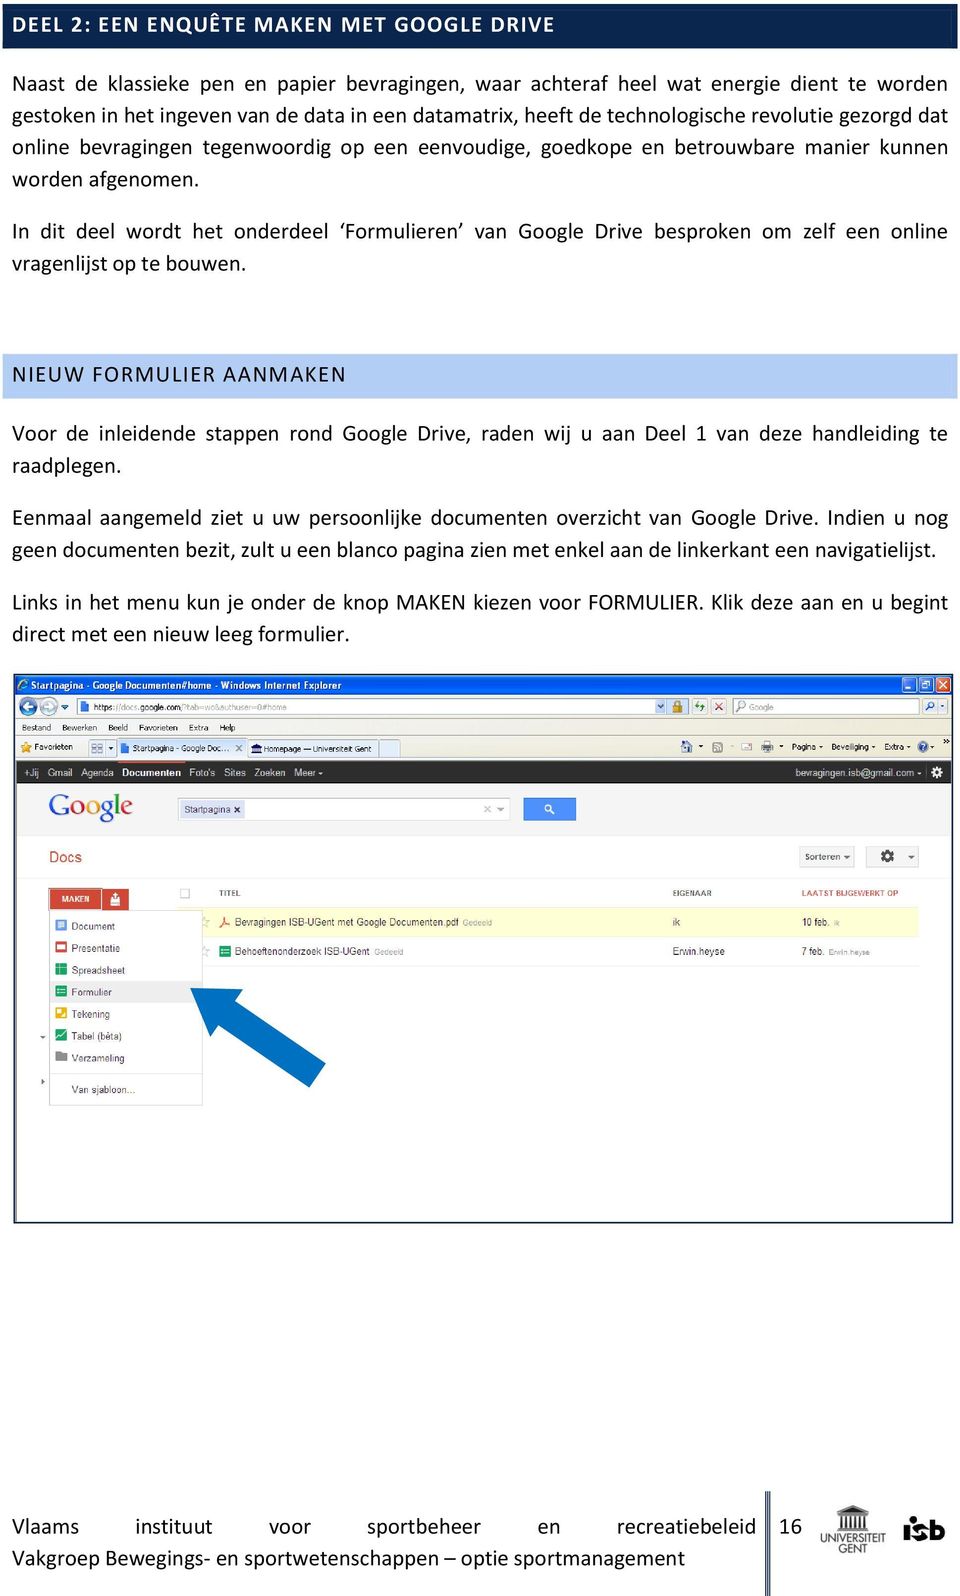 In dit deel wordt het onderdeel Formulieren van Google Drive besproken om zelf een online vragenlijst op te bouwen.